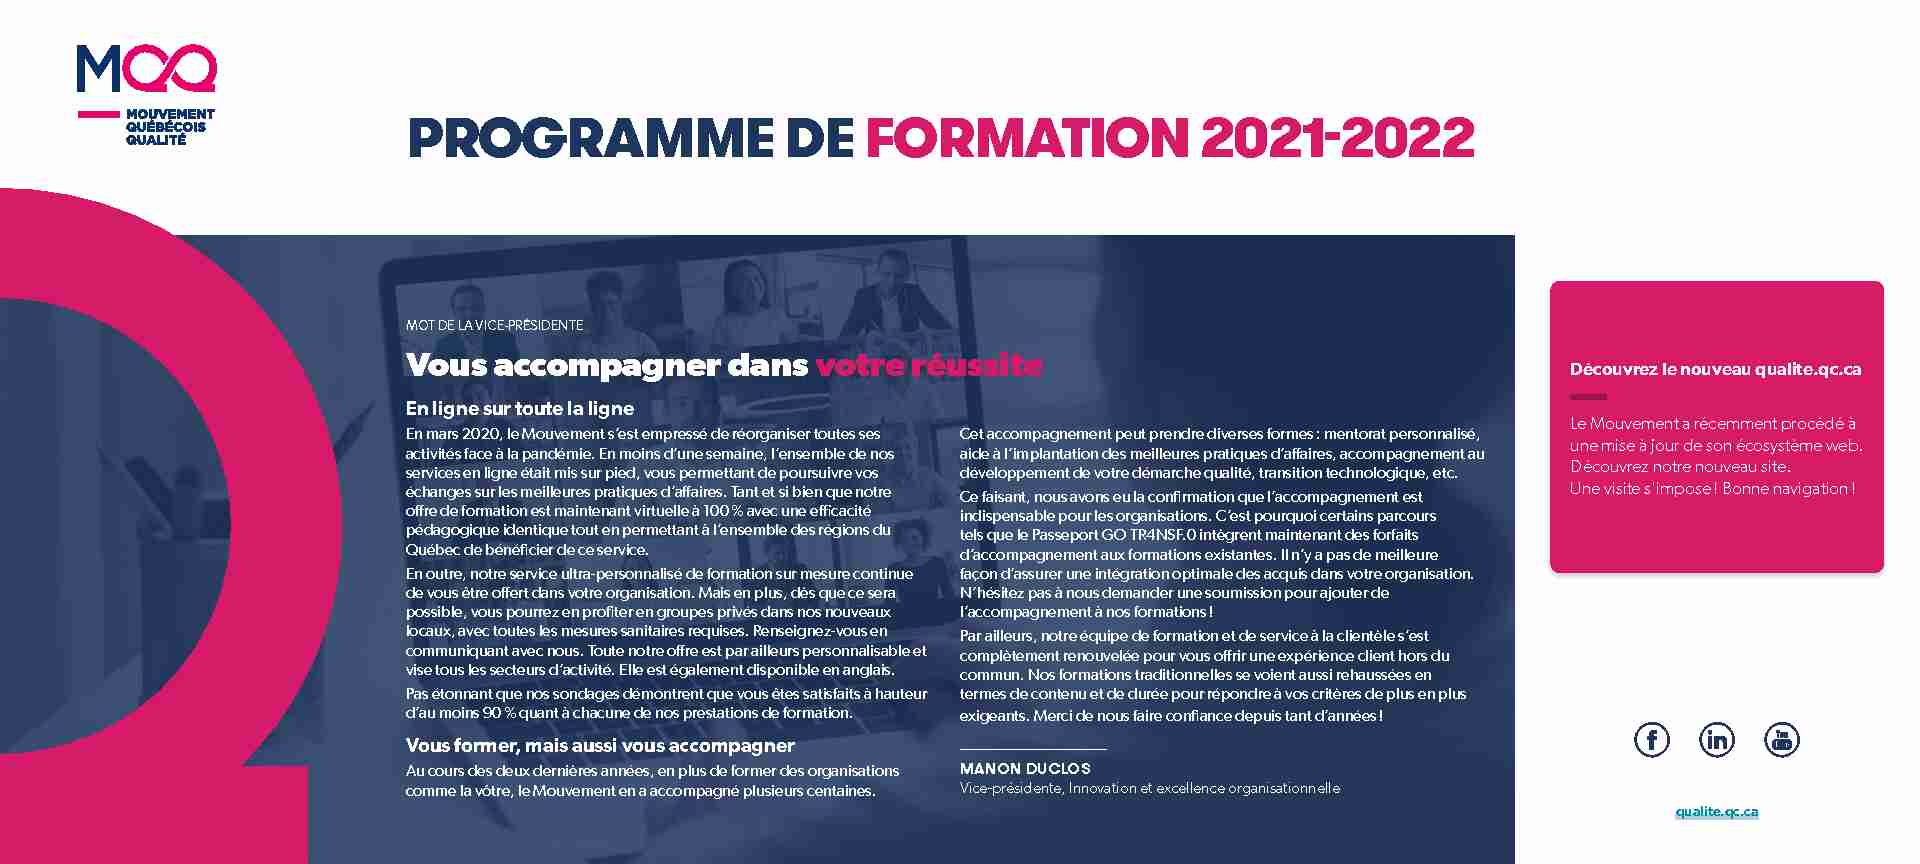 PROGRAMME DE FORMATION 2021-2022